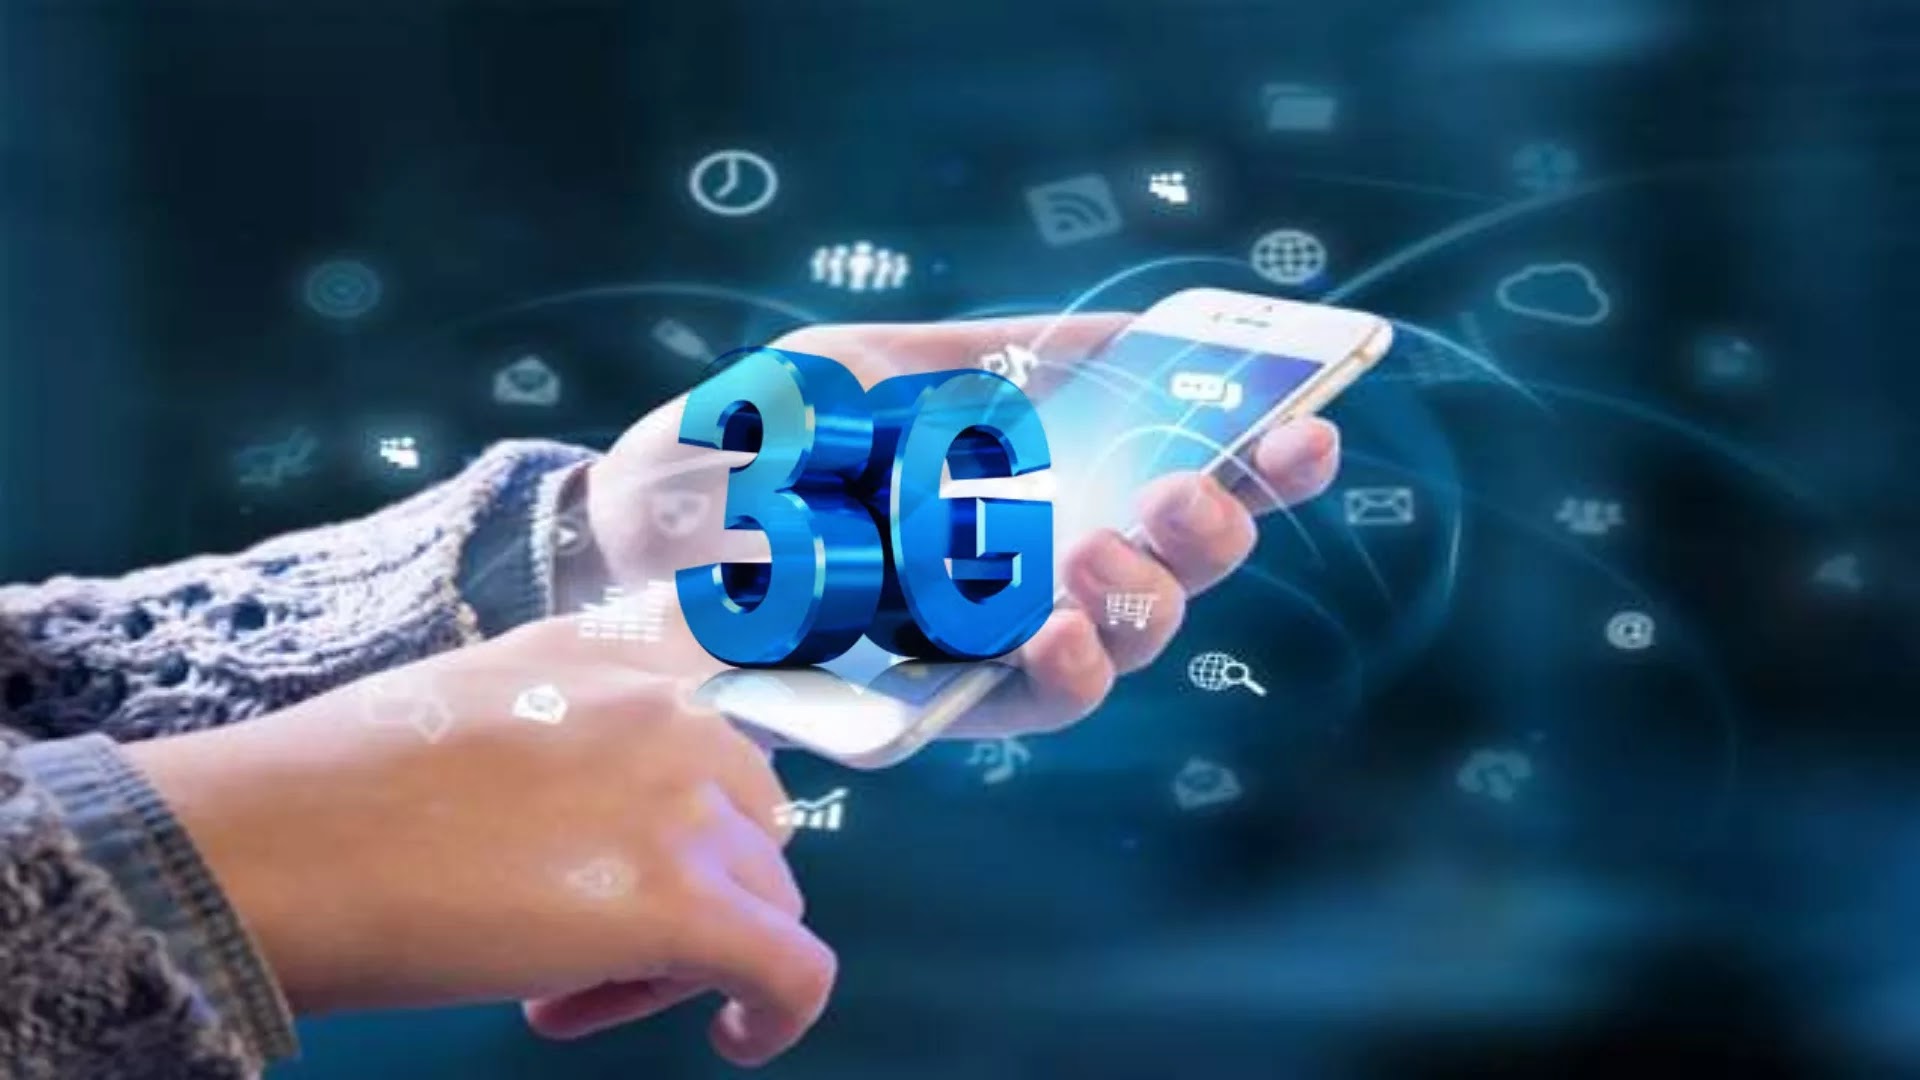 3G का क्या मतलब है? 3G की शुरुआत कब हुई? 2G और 3G क्या है? भारत में 3G कब लांच हुआ? भारत का पहला 3G नेटवर्क कौन सा है? भारत में 3G कब लांच हुआ? इंडिया में 3G लॉन्च कब होगा? इंडिया में 5G नेटवर्क कब आएगा? इंडिया का सबसे फास्ट नेटवर्क कौन सा है 2021?